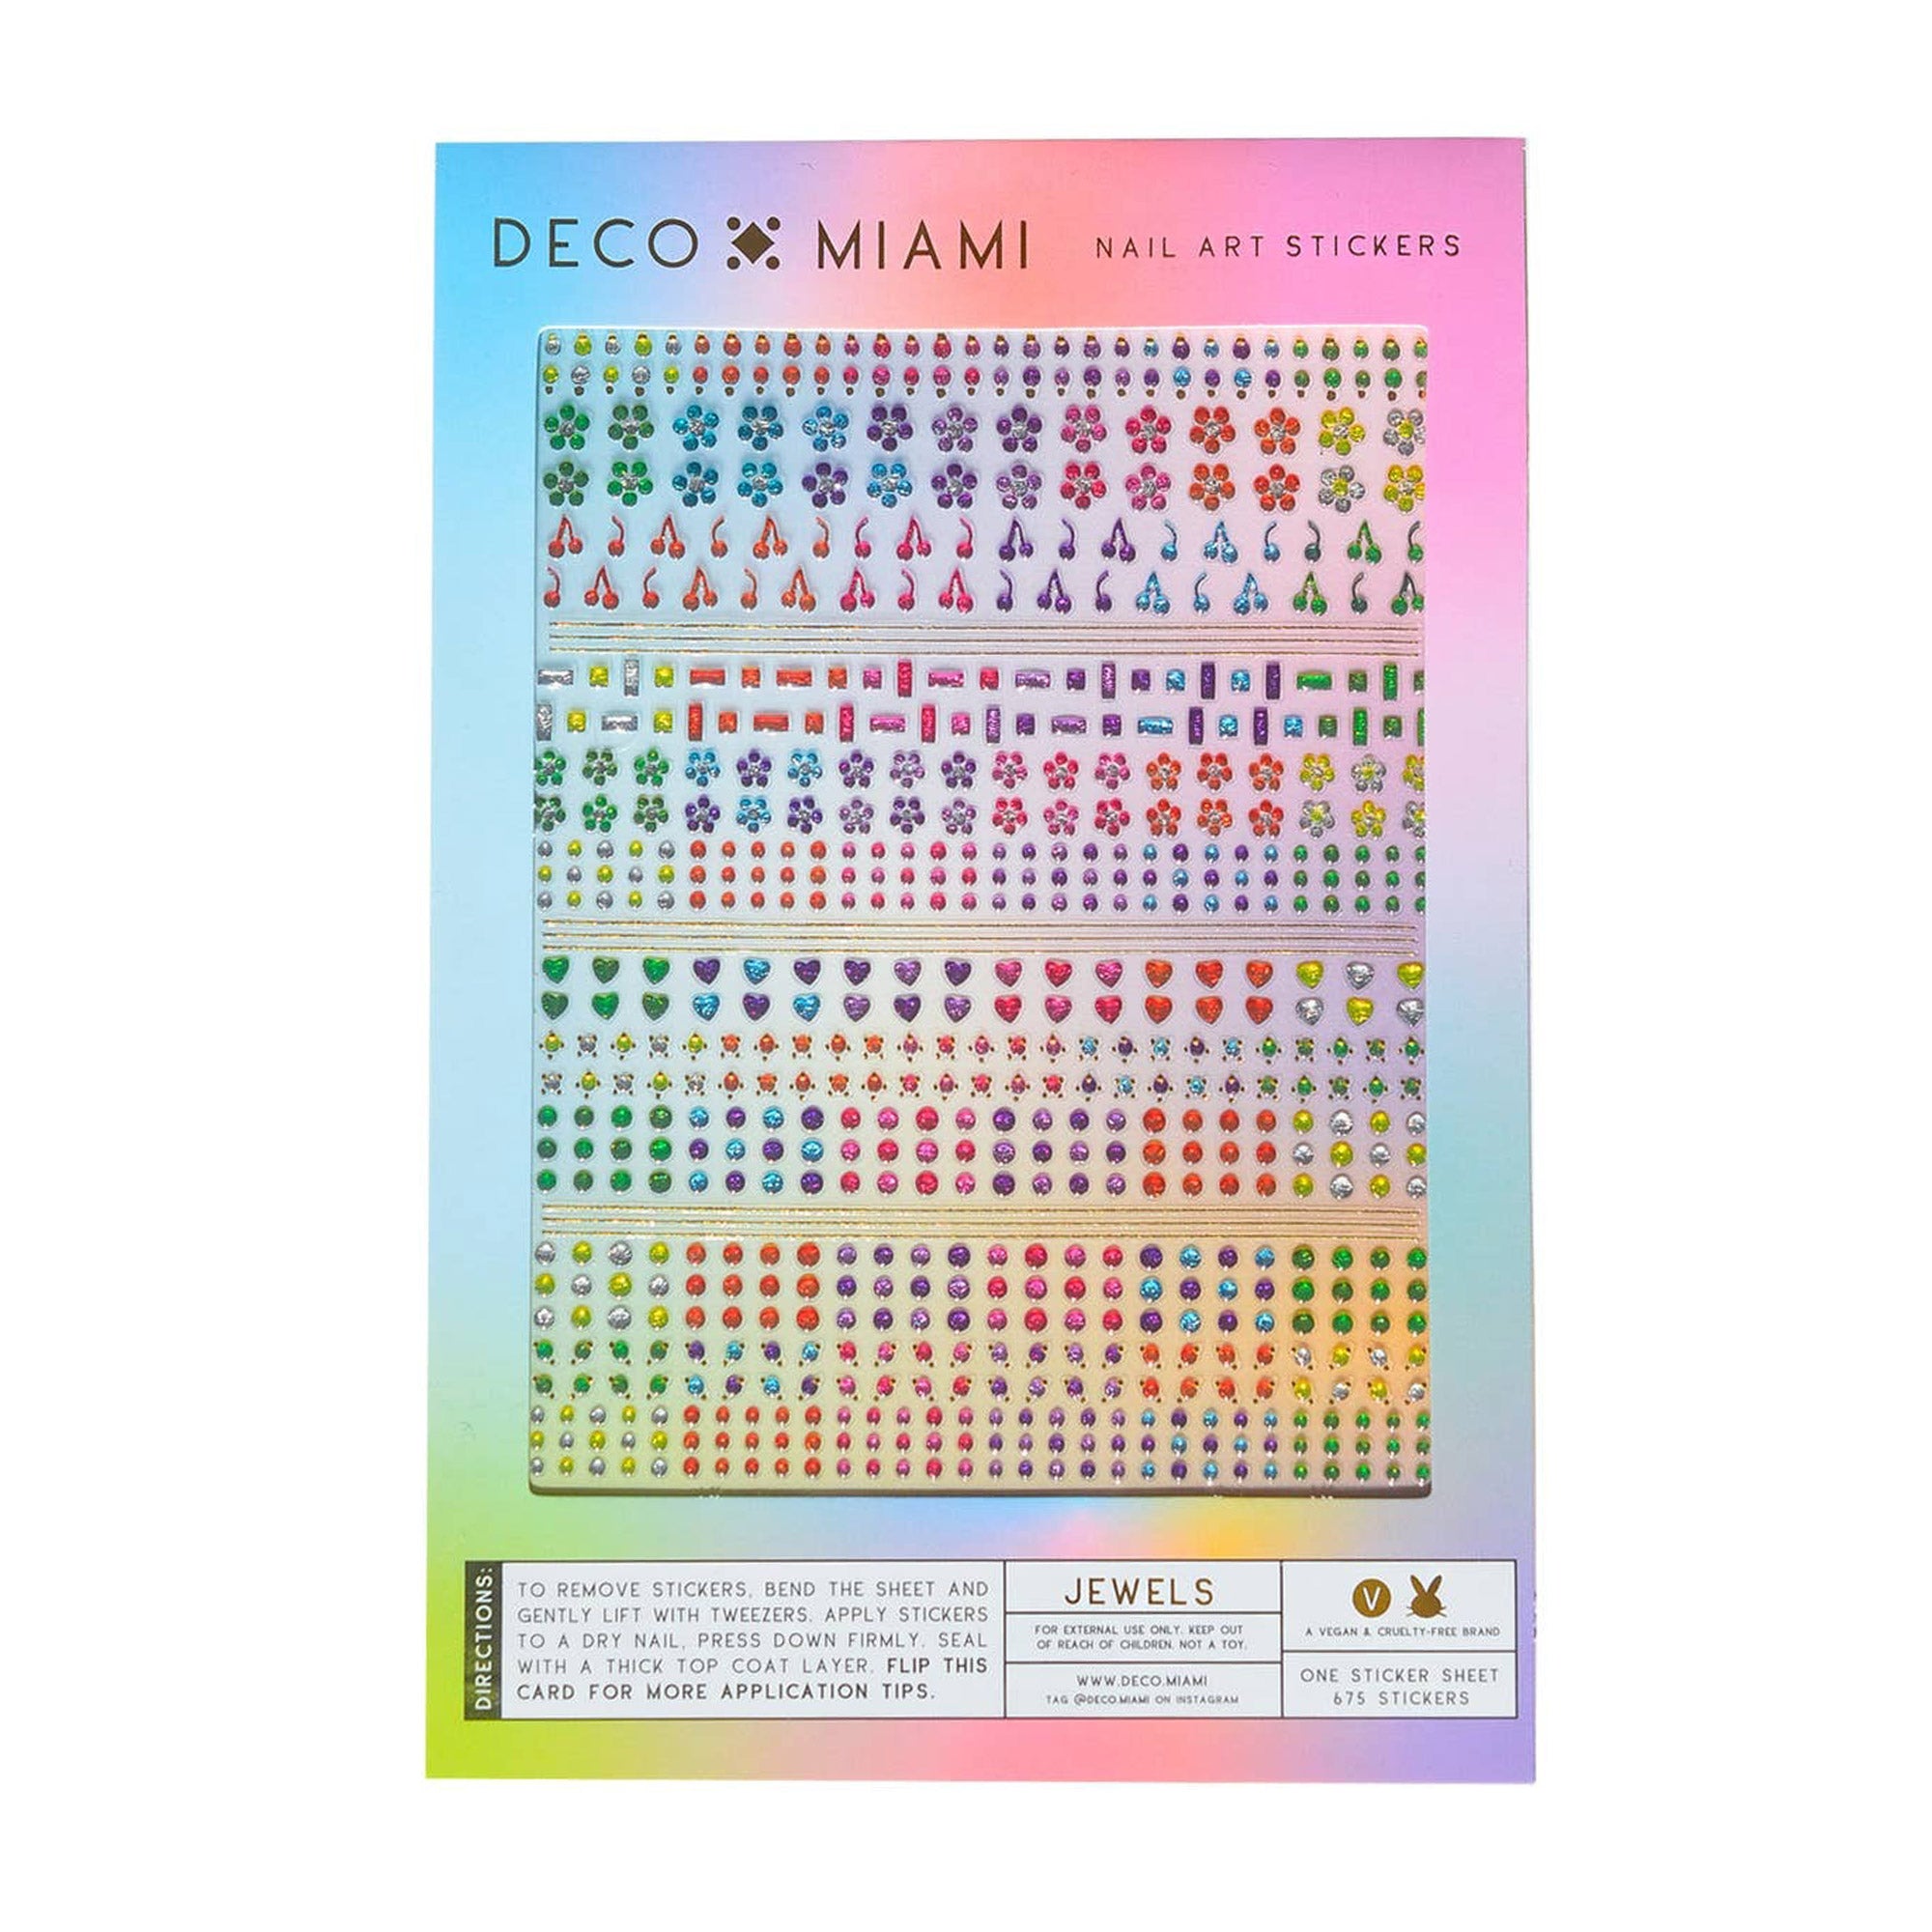 Deco Miami Nail Art Stickers / Jewels Rainbow Hearts Geometric Cherries Floral